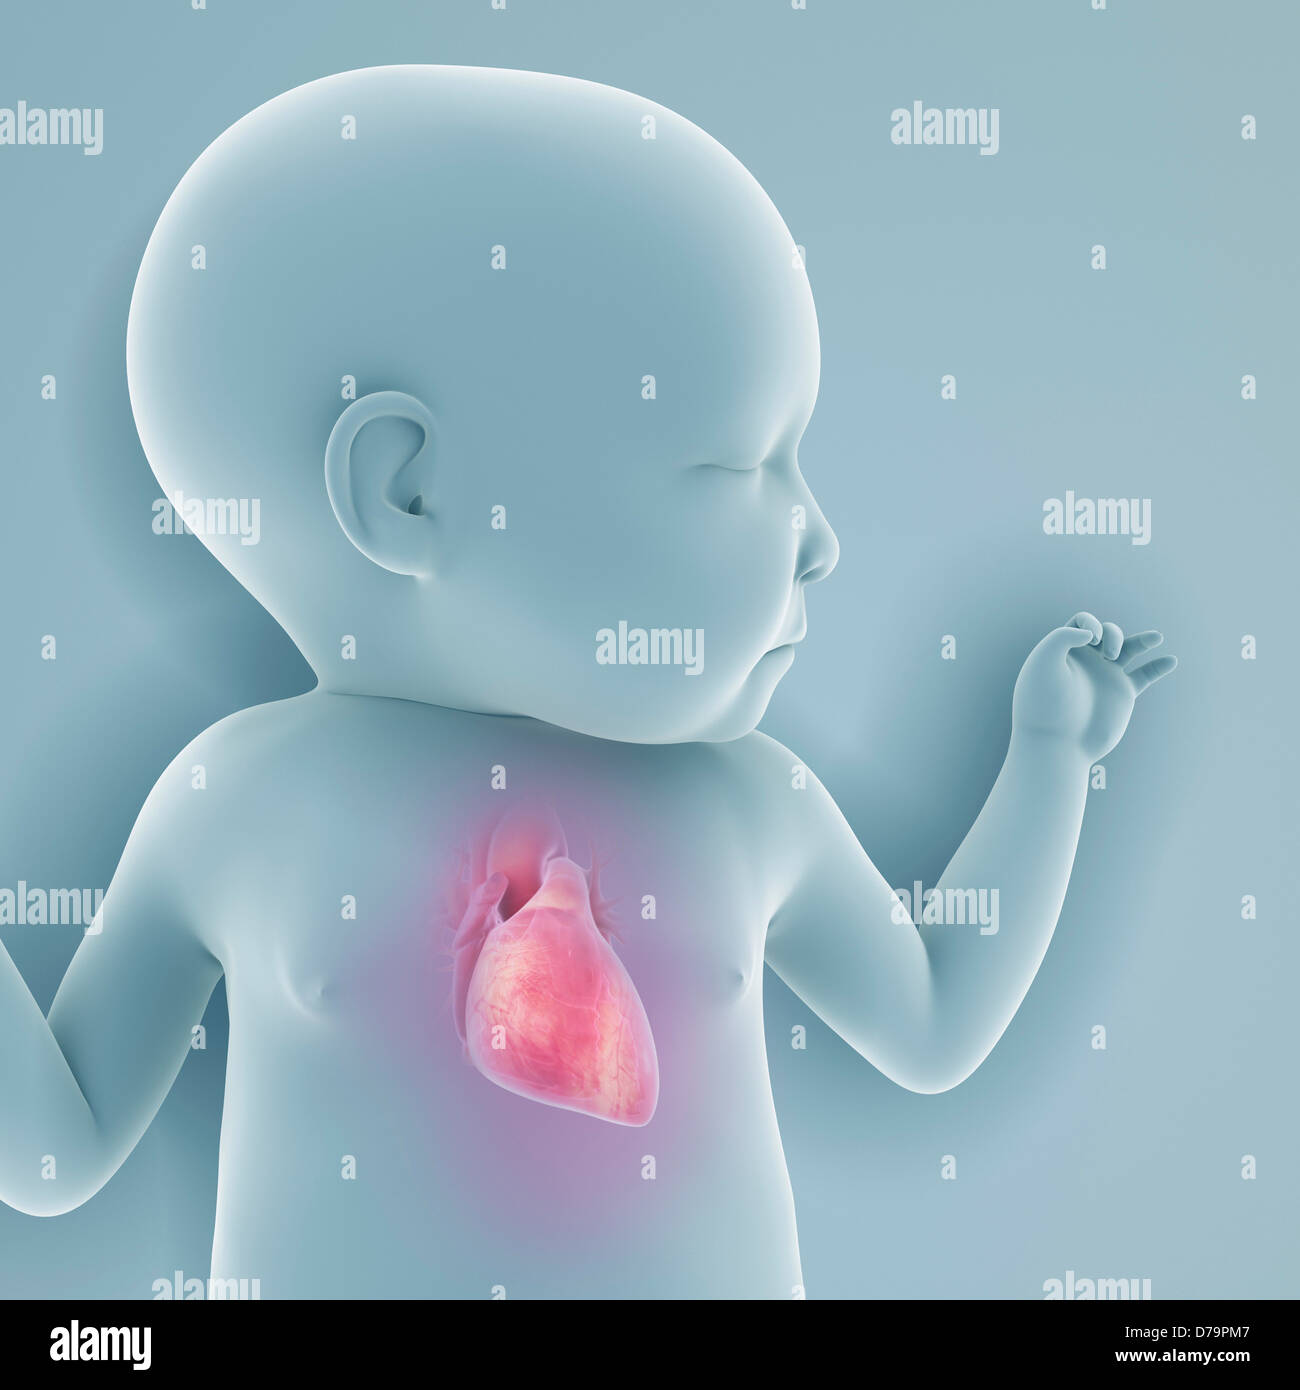 Newborn Anatomy Stock Photo